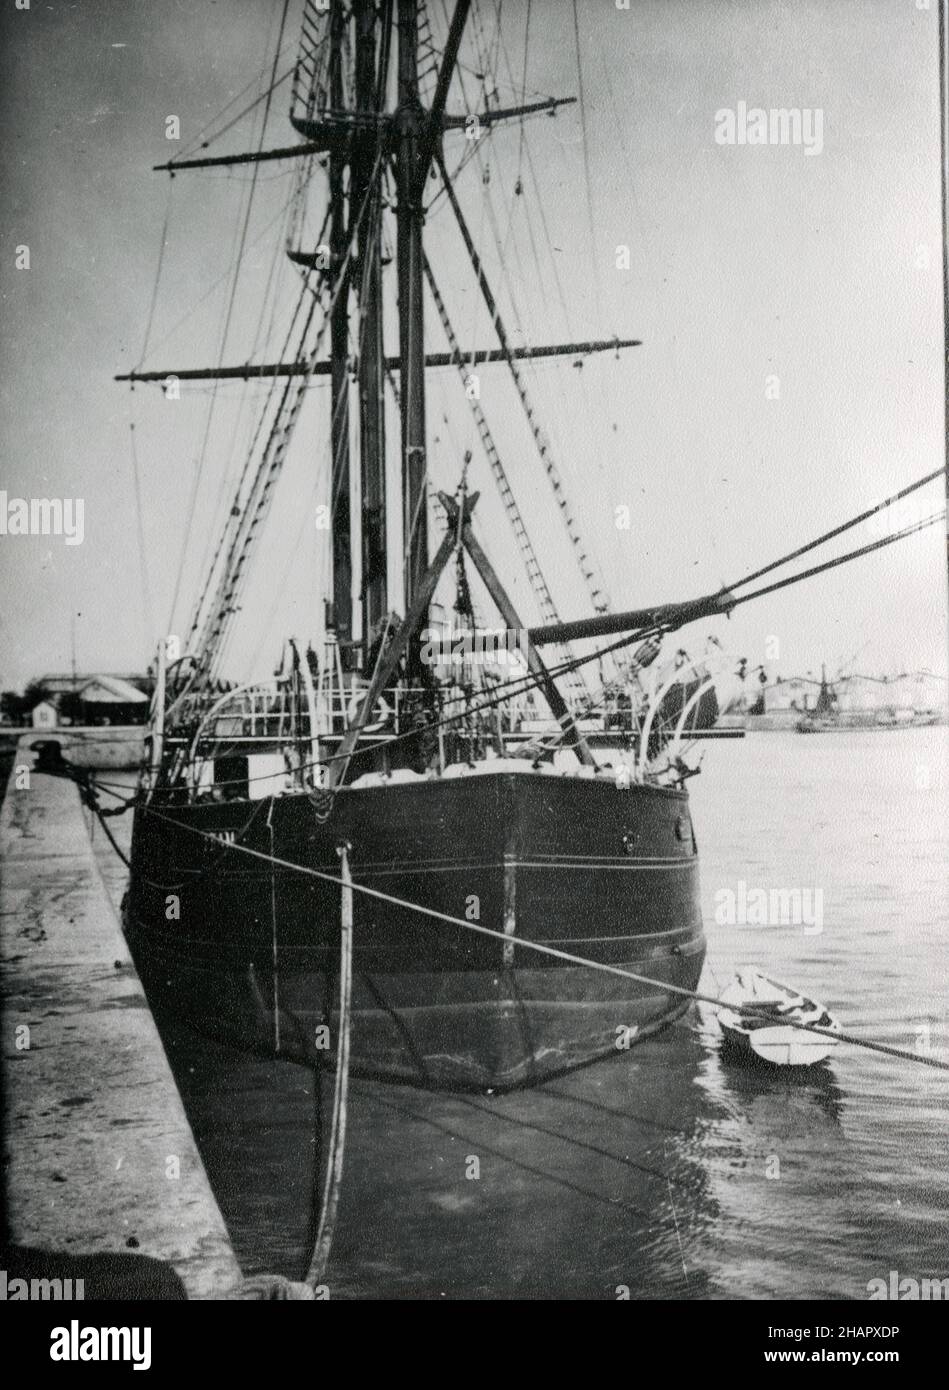 Gjøa, il piccolo slop di Roald Amundsen, esploratore norvegese delle  regioni polari, in Argentina durante la sua spedizione del Polo Sud Foto  stock - Alamy